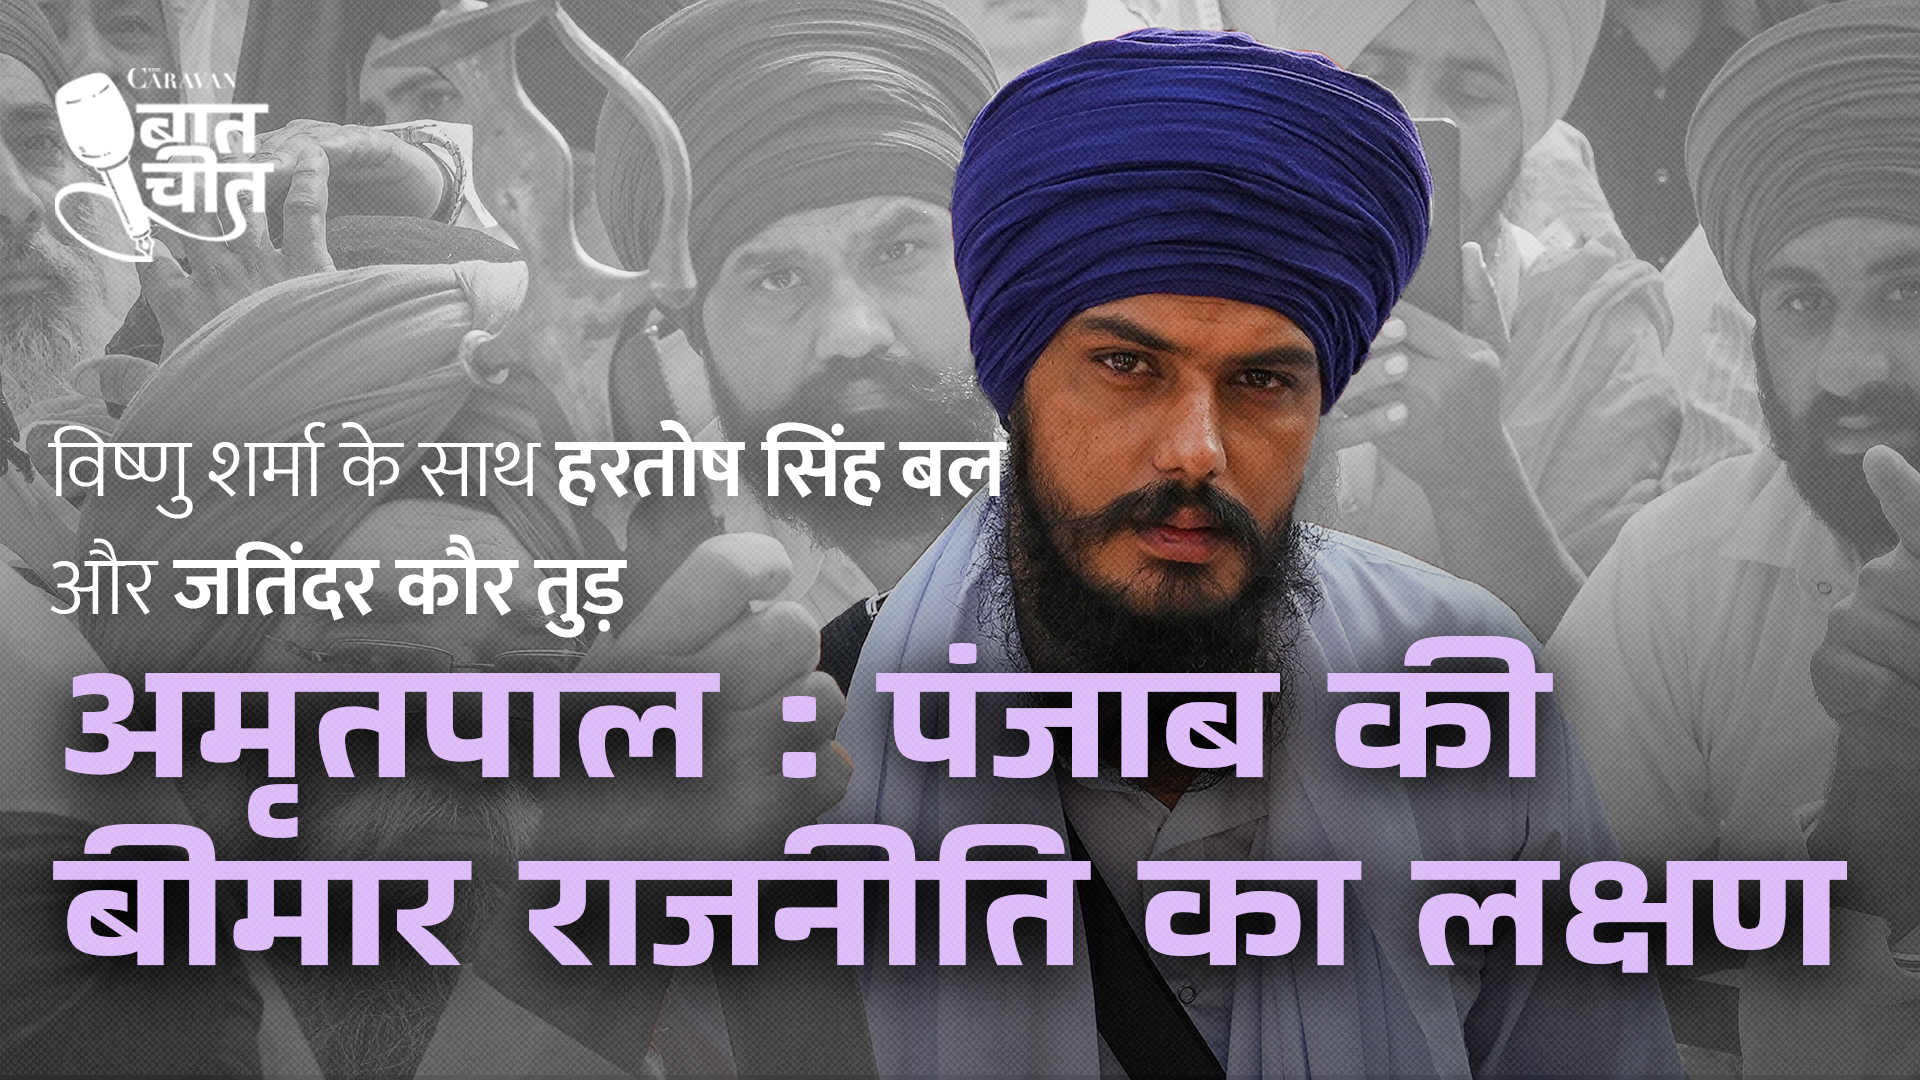 Caravan Baatcheet: Amritpal Singh’s rise to power in Punjab